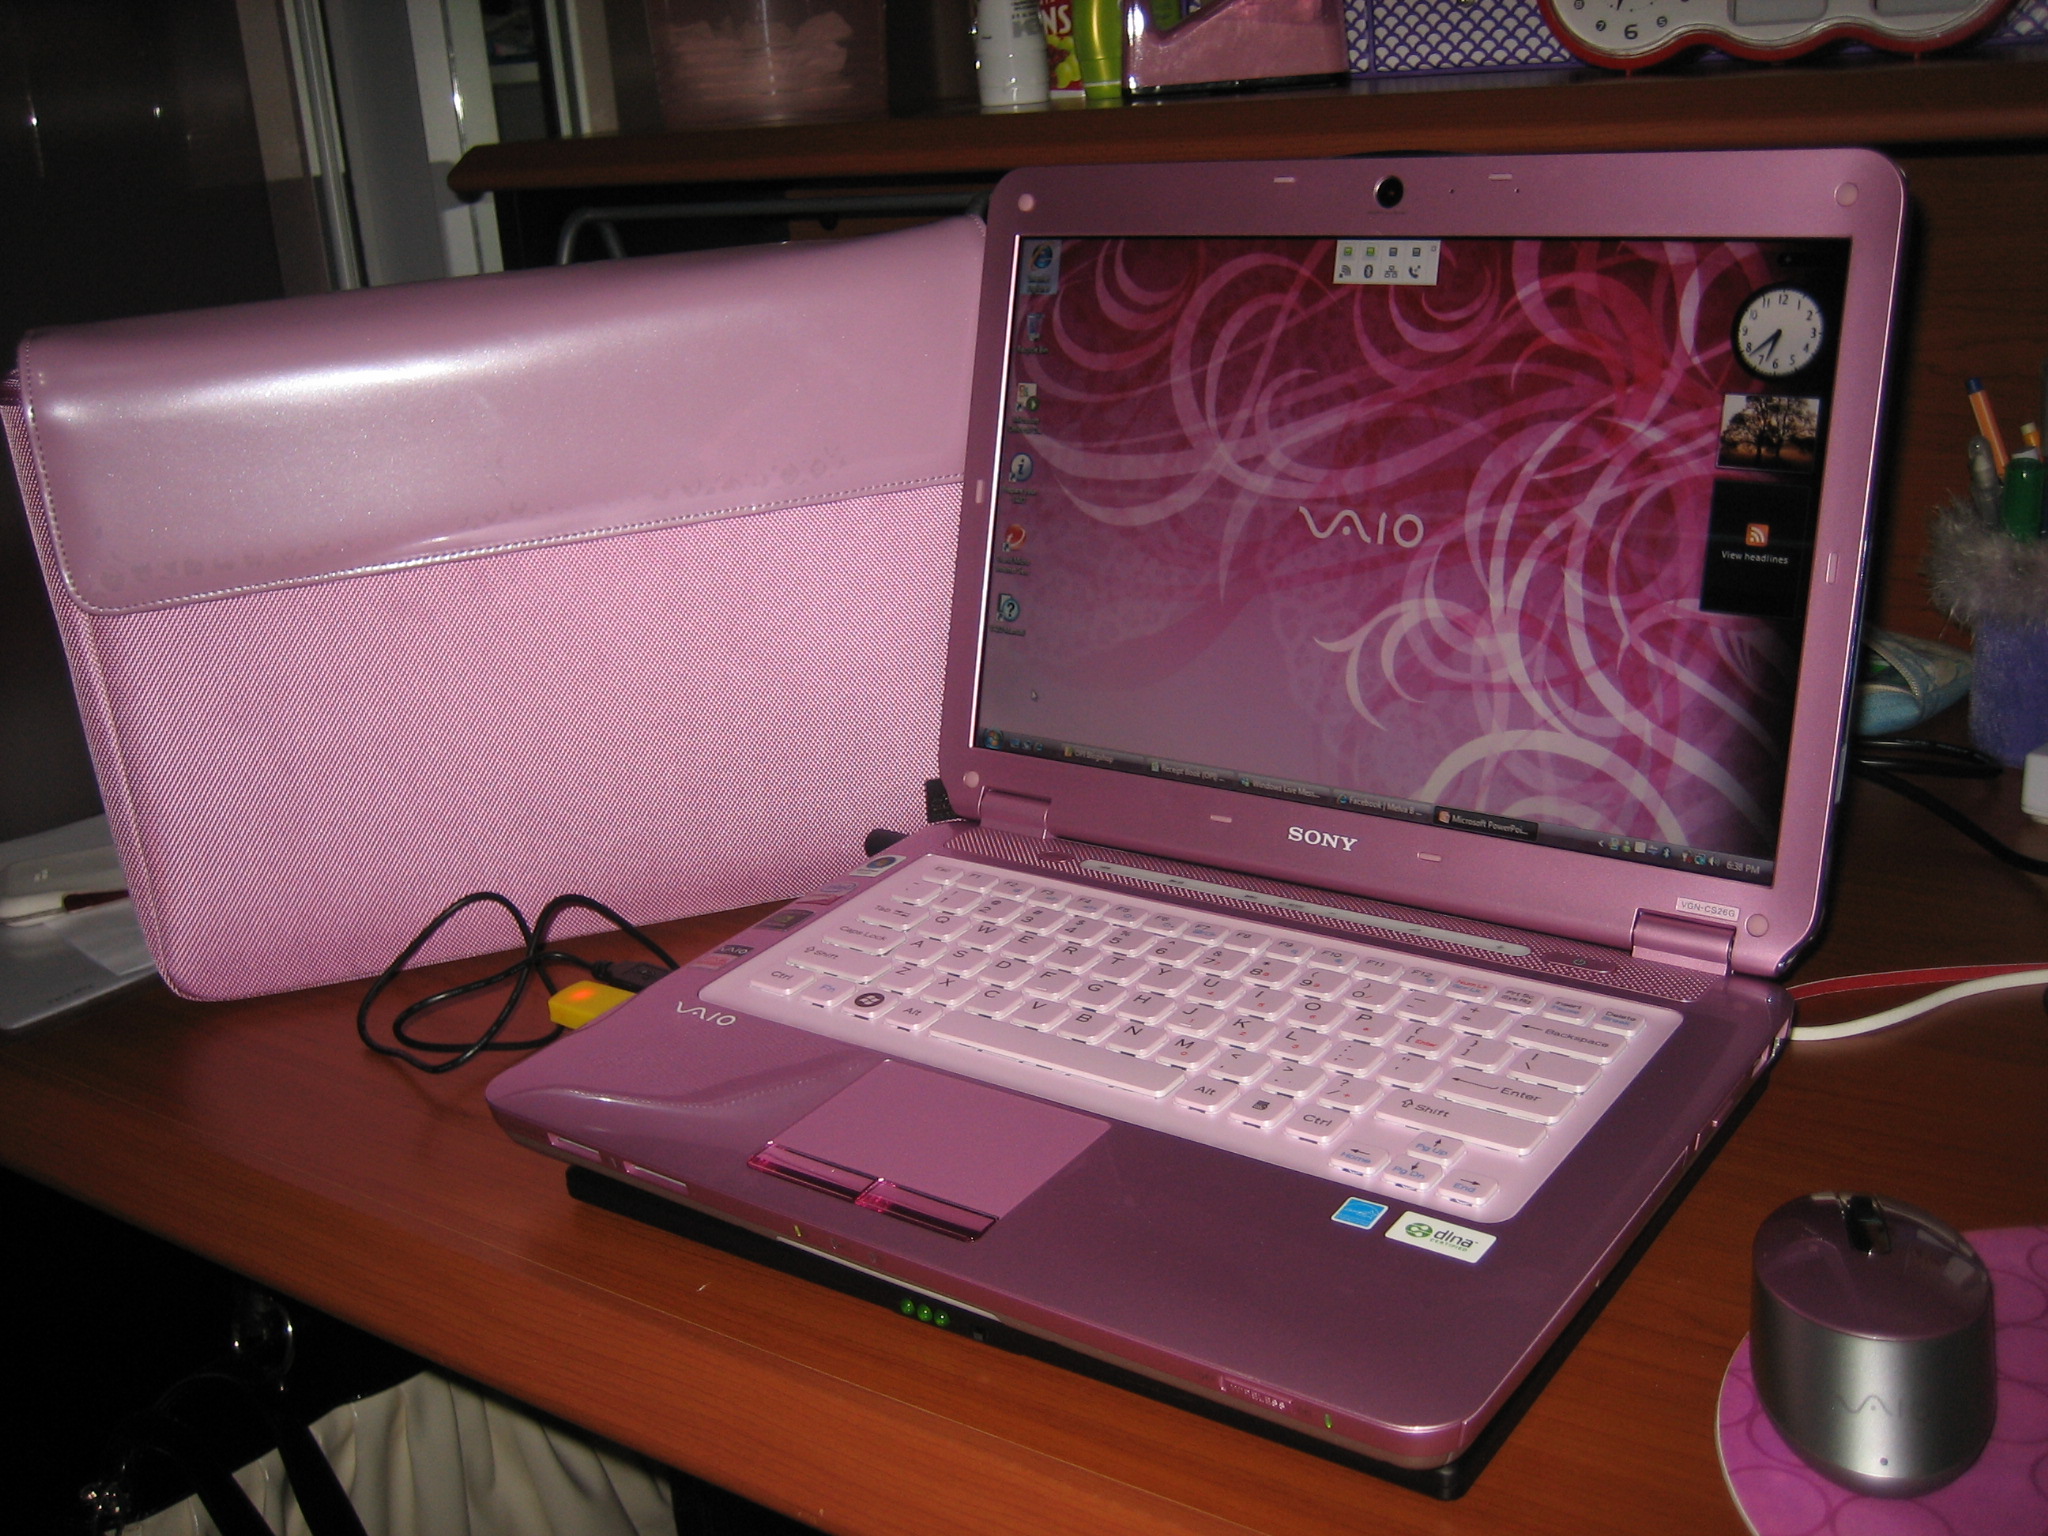 Купить ноутбук челны. Сони Вайо розовый ноутбук. Нетбук сони Вайо. Sony VAIO розовый 2009. Нетбук Sony VAIO розовый.